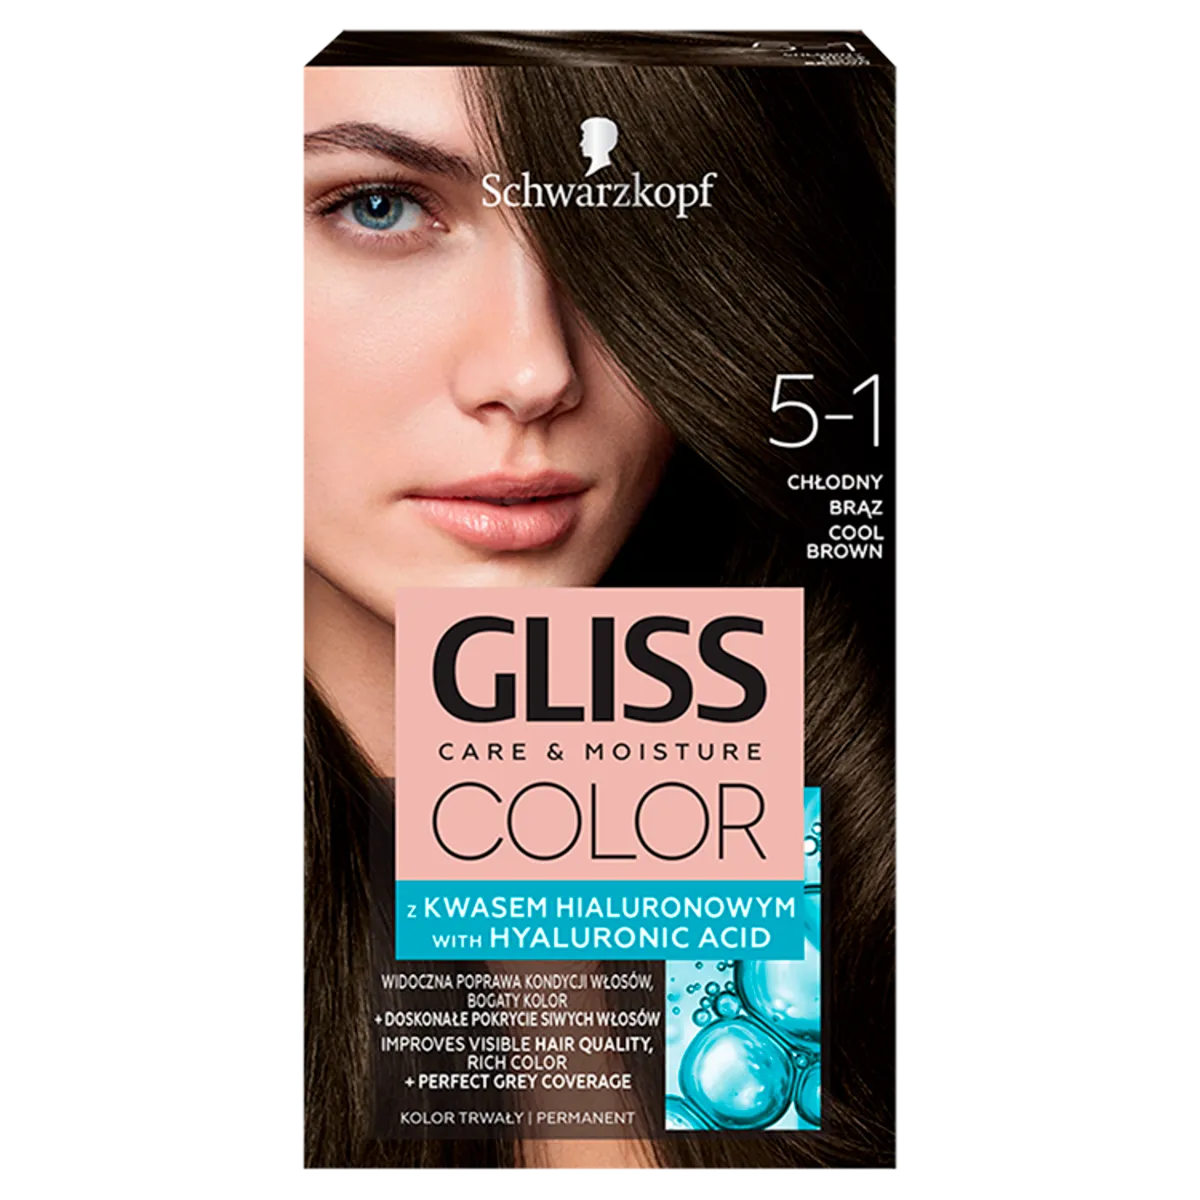 Schwarzkopf Gliss Color Farba do włosów nr 5-1 Chłodny brąz, 1 szt.